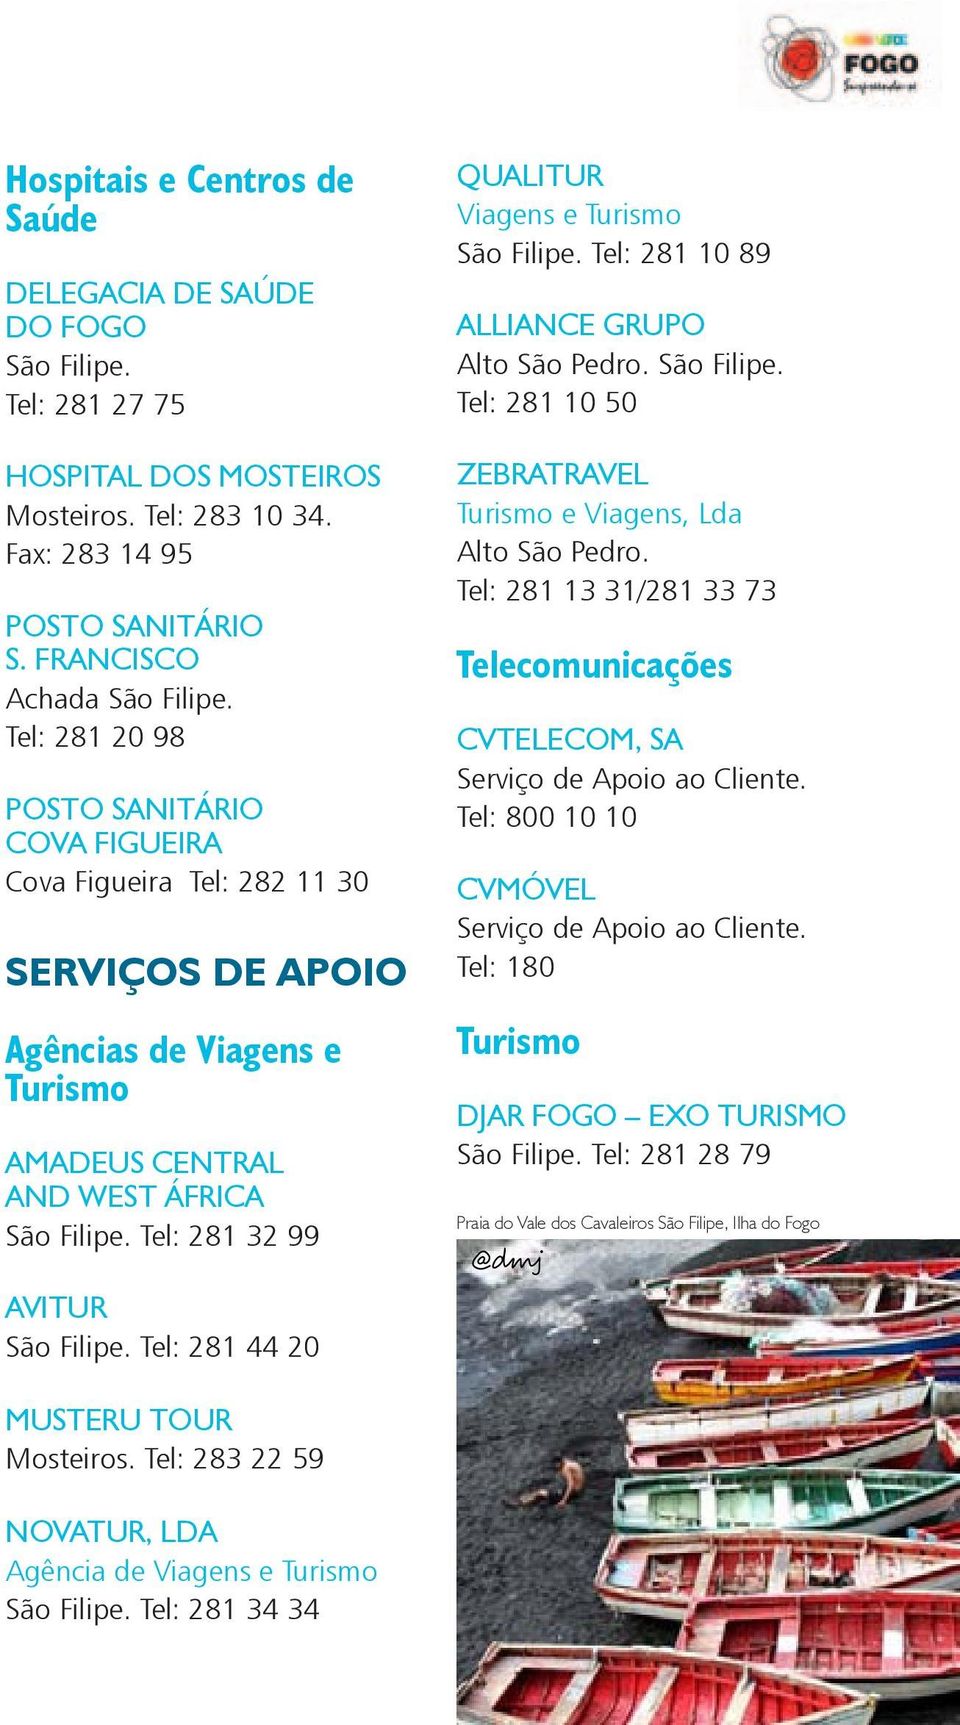 Viagens e Turismo Tel: 281 10 89 ALLIANCE GRUPO Alto São Pedro. Tel: 281 10 50 ZEBRATRAVEL Turismo e Viagens, Lda Alto São Pedro.